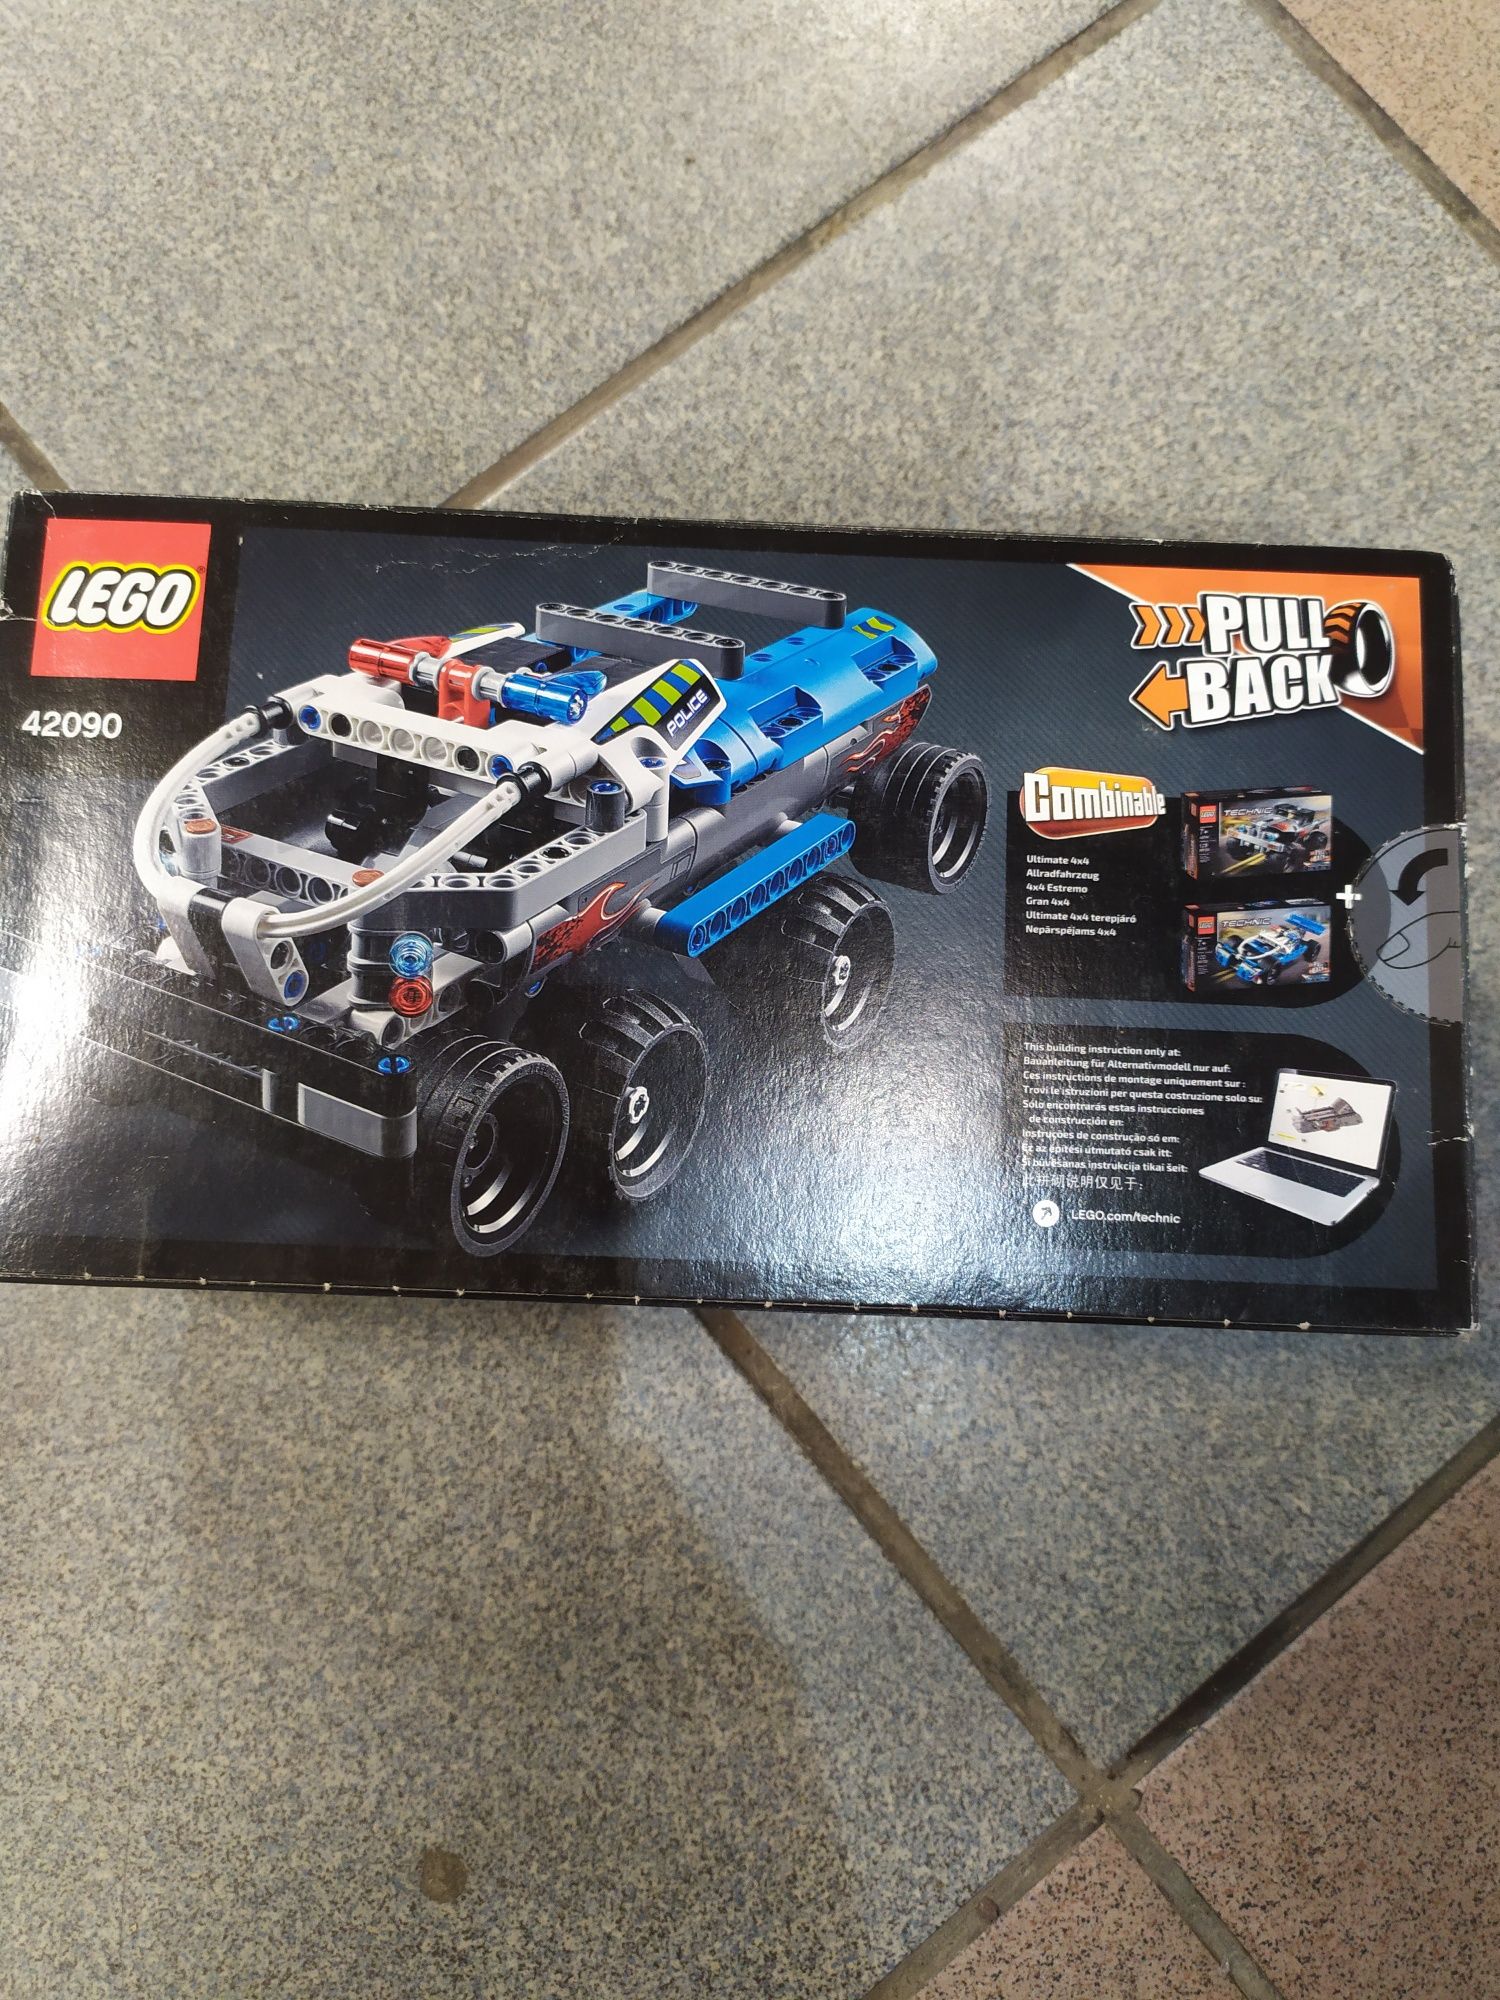 LEGO 42090 Technic monster truck wysyłka w cenie